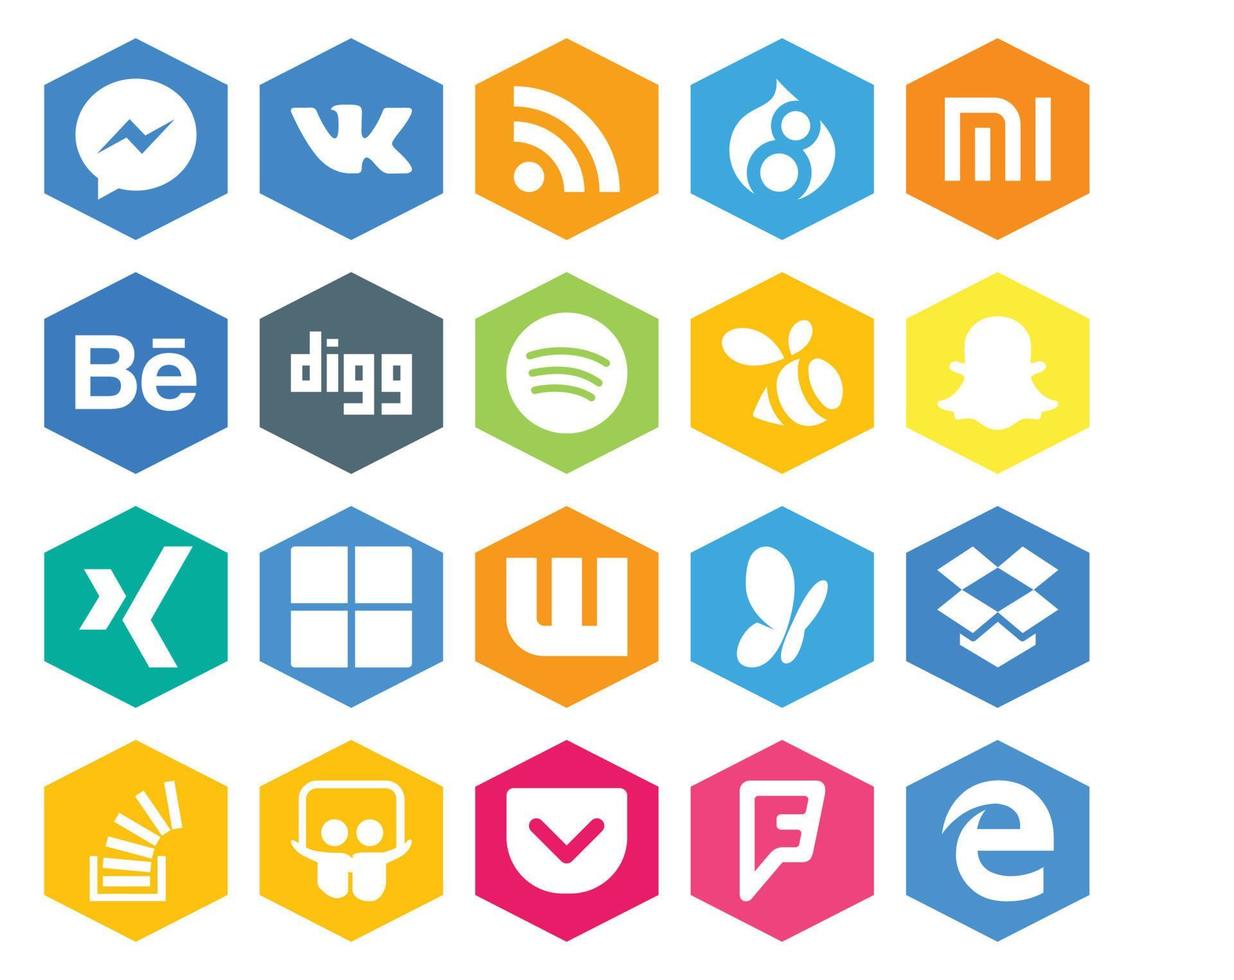 Paquete de 20 íconos de redes sociales que incluye stock stockoverflow swarm dropbox wattpad vector